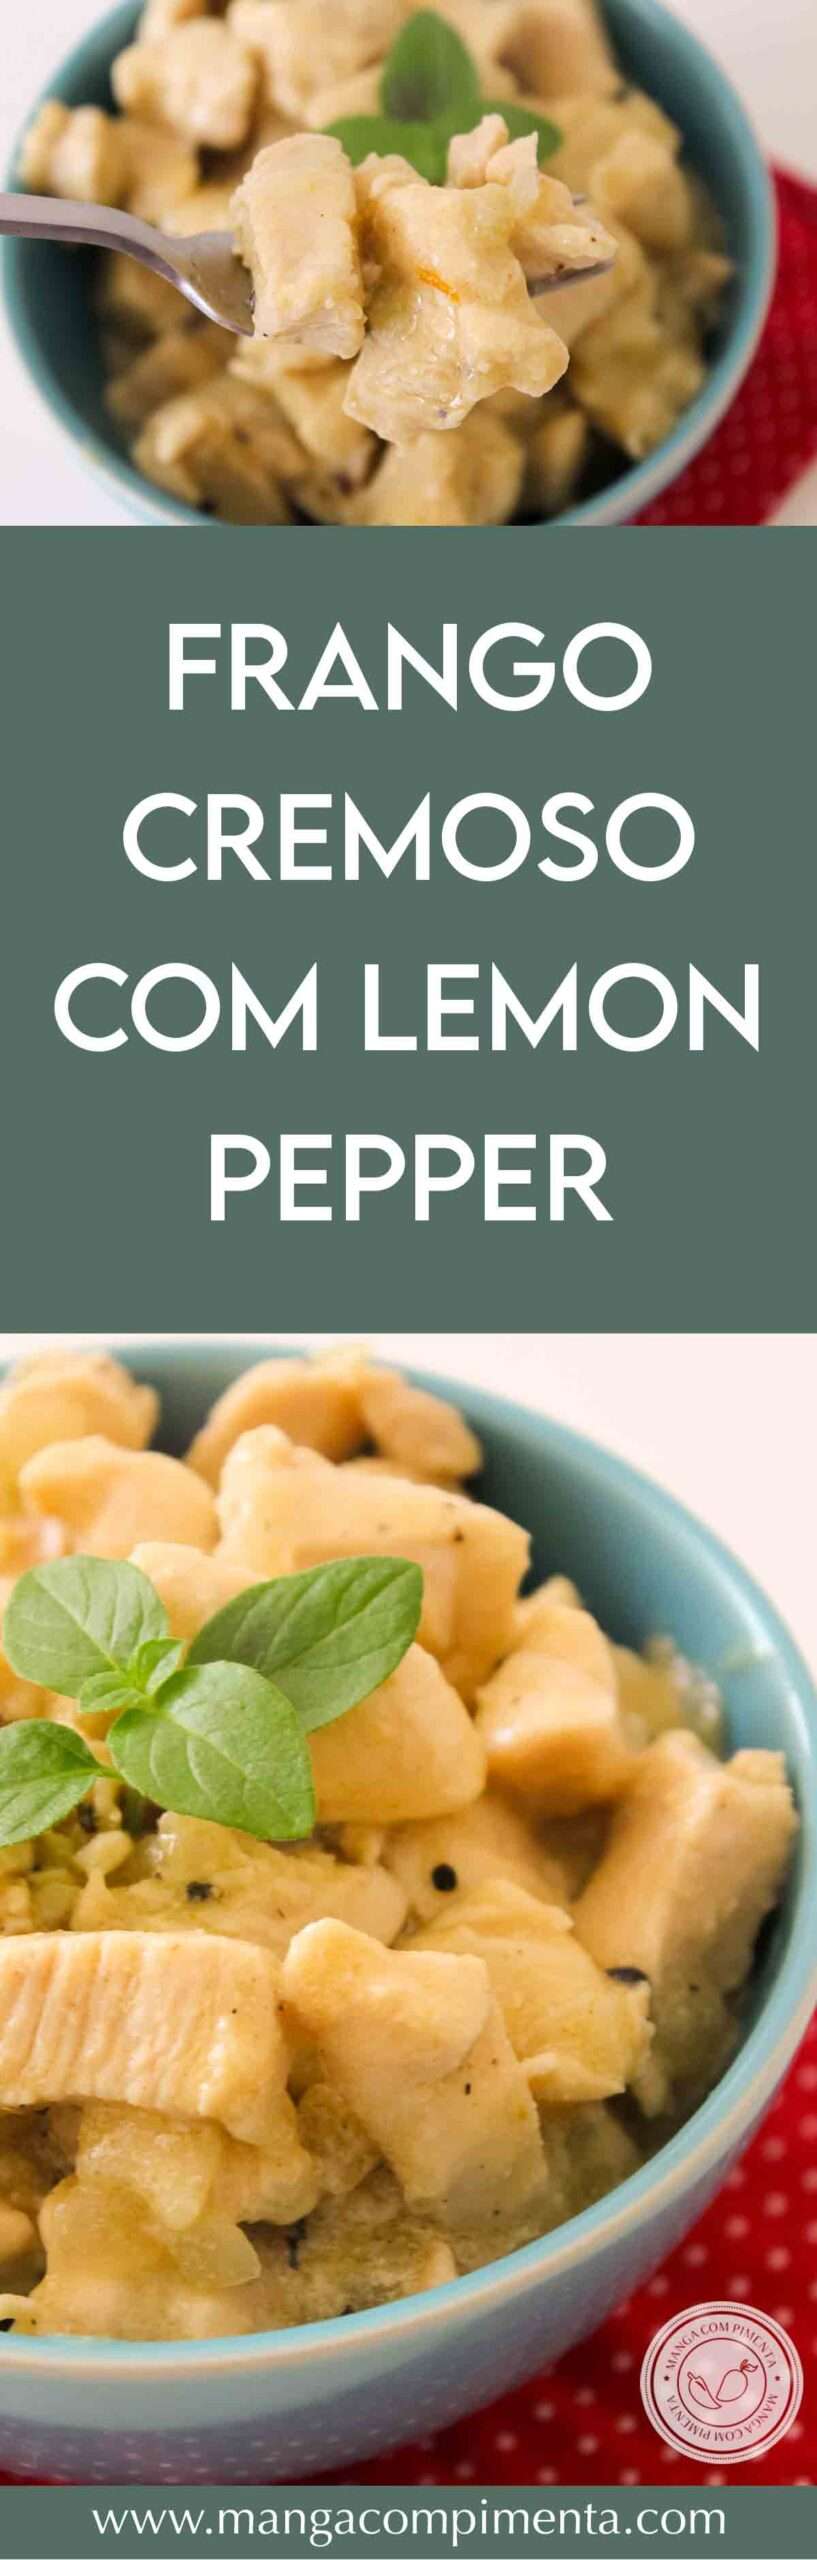 Receita de Frango Cremoso com Lemon Pepper - gostinho especial de limão.